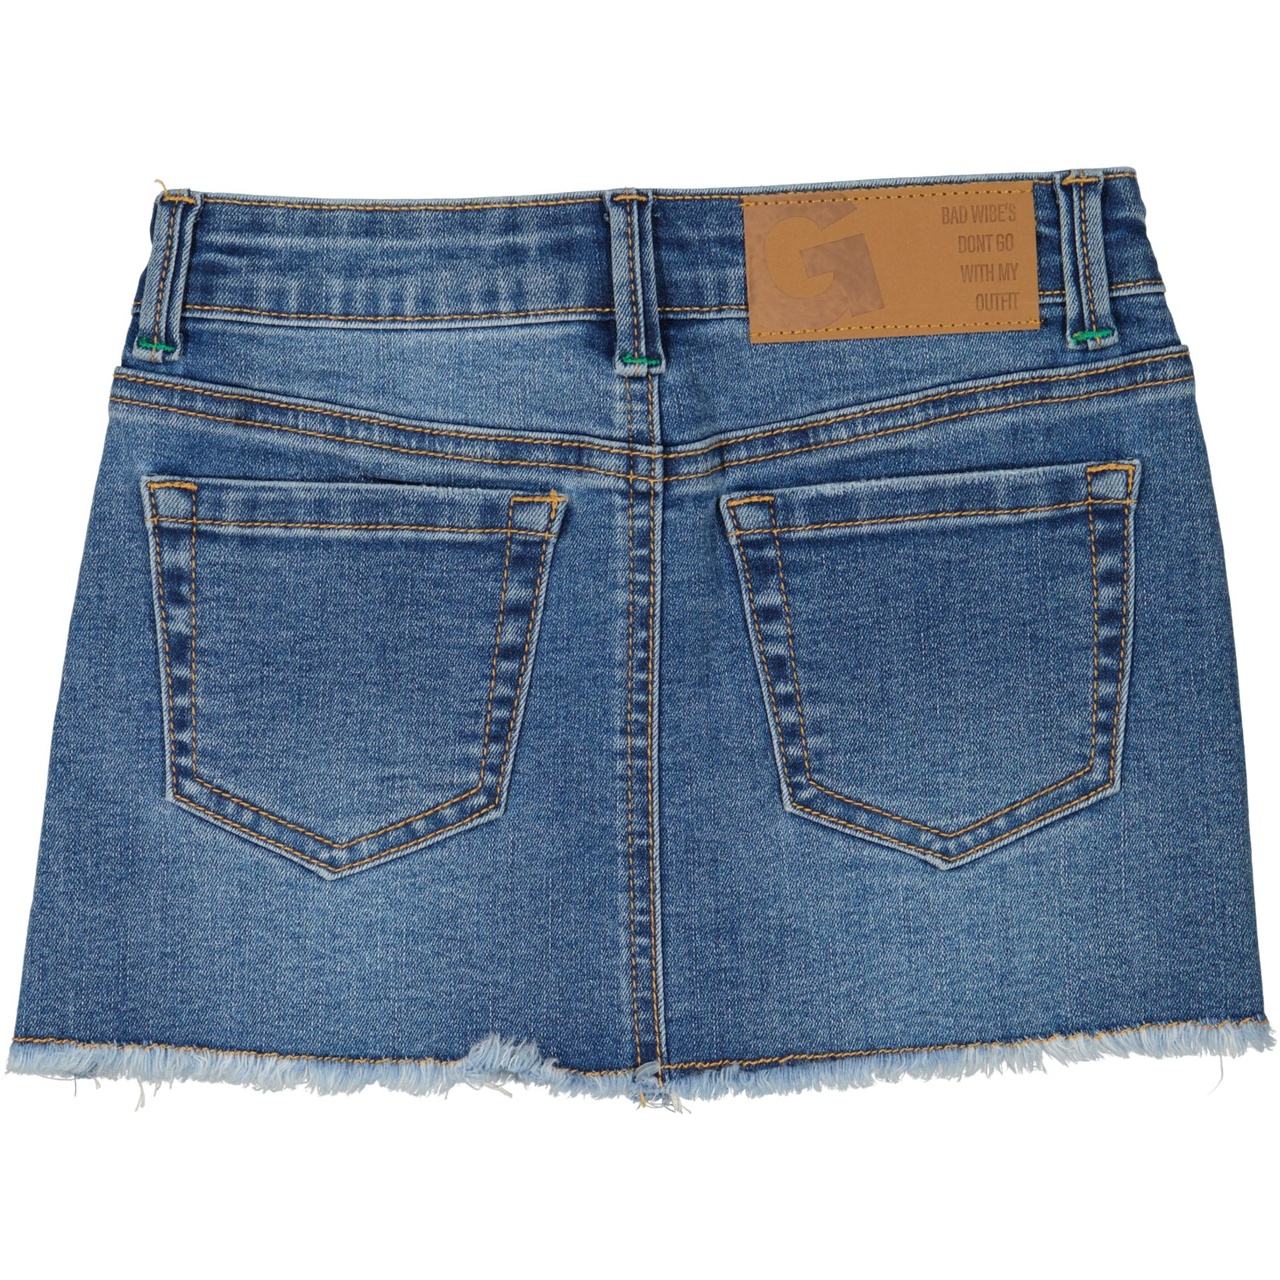 Jeans skirt Denim Sininen wash 86/92